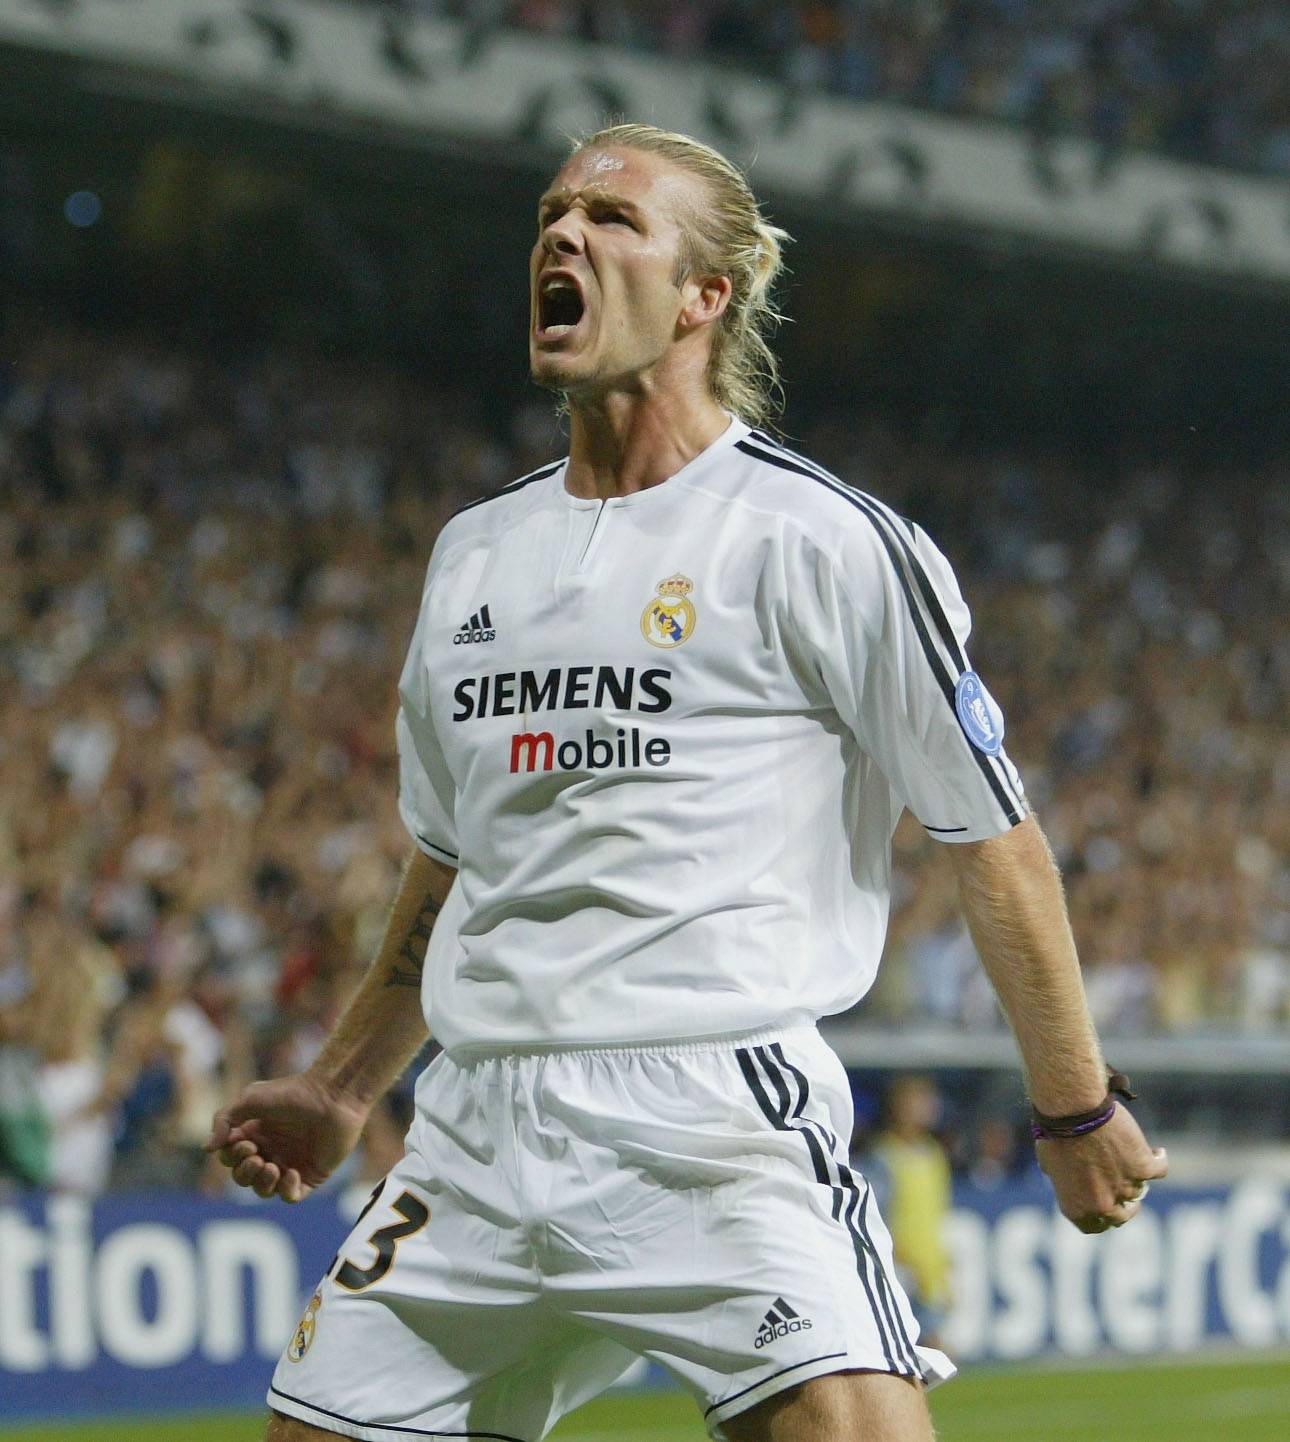 Po zwycięskim meczu z Olympique Marsylia w 2003 r. /(Fot. Getty Images)